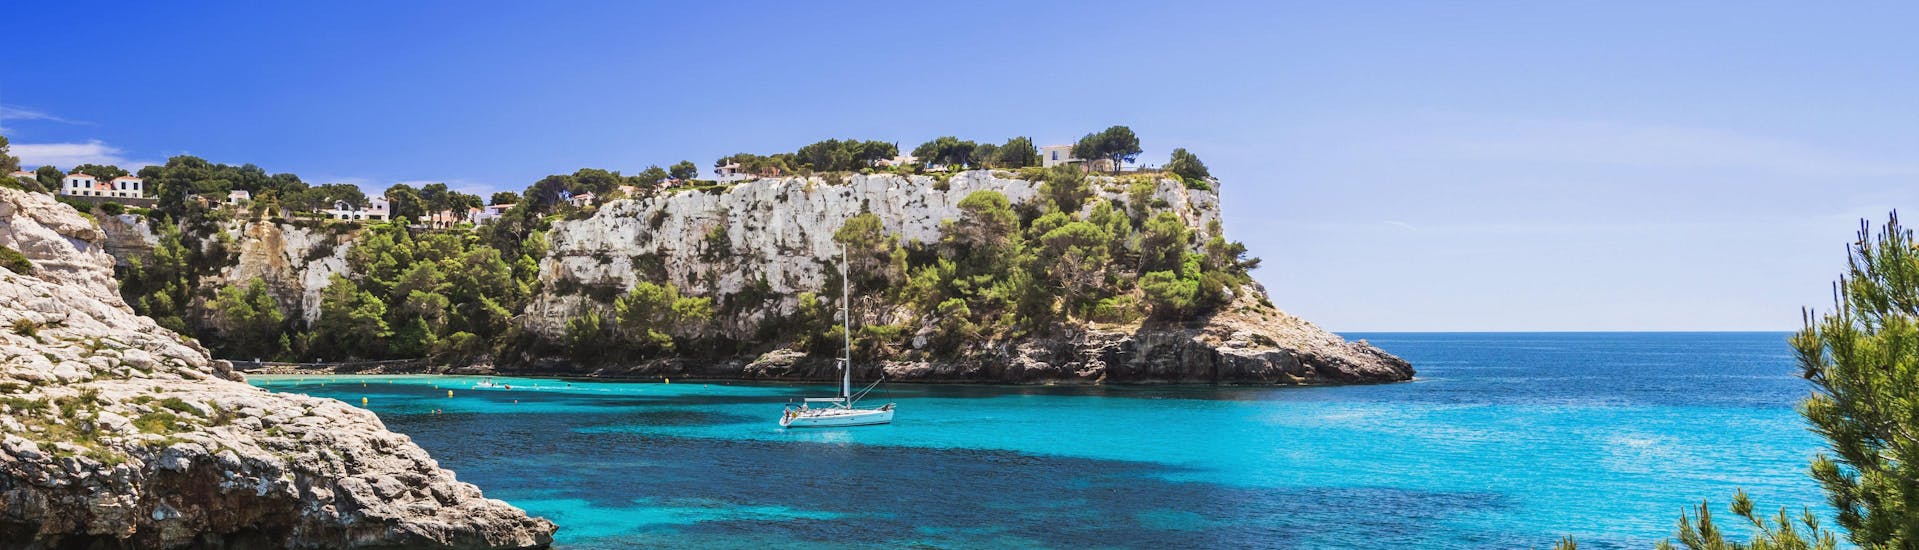 Vista de las aguas cristalinas del mar Mediterráneo en Menorca durante un paseo en barco.